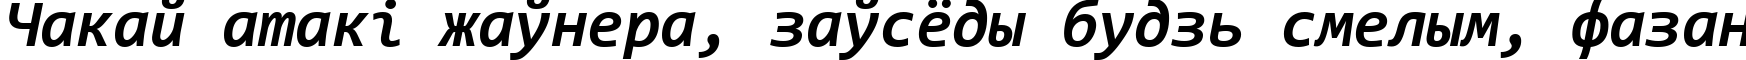 Пример написания шрифтом Consolas Bold Italic текста на белорусском